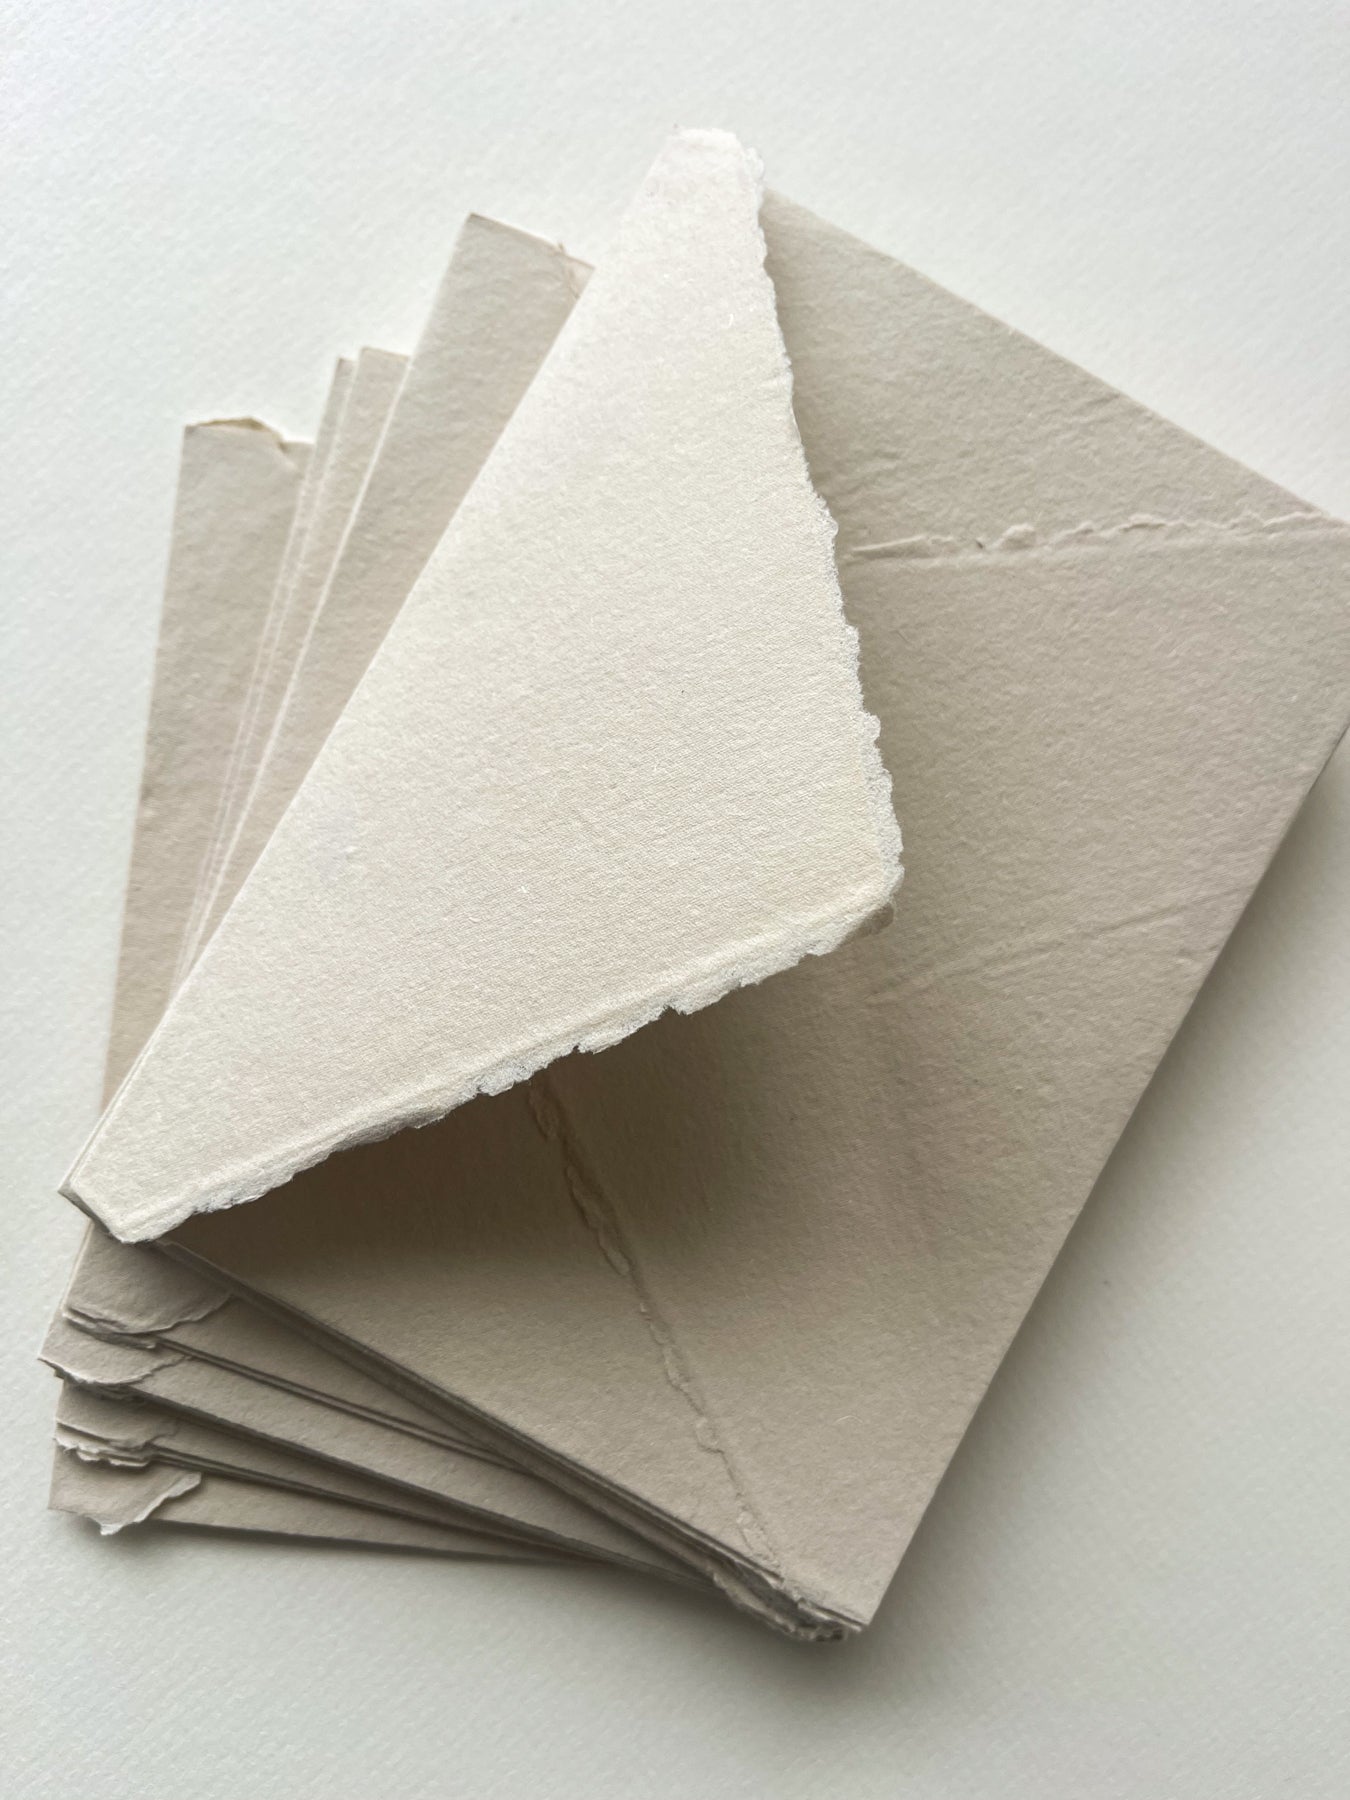 Beige Deckle Edge Cotton Rag Envelopes